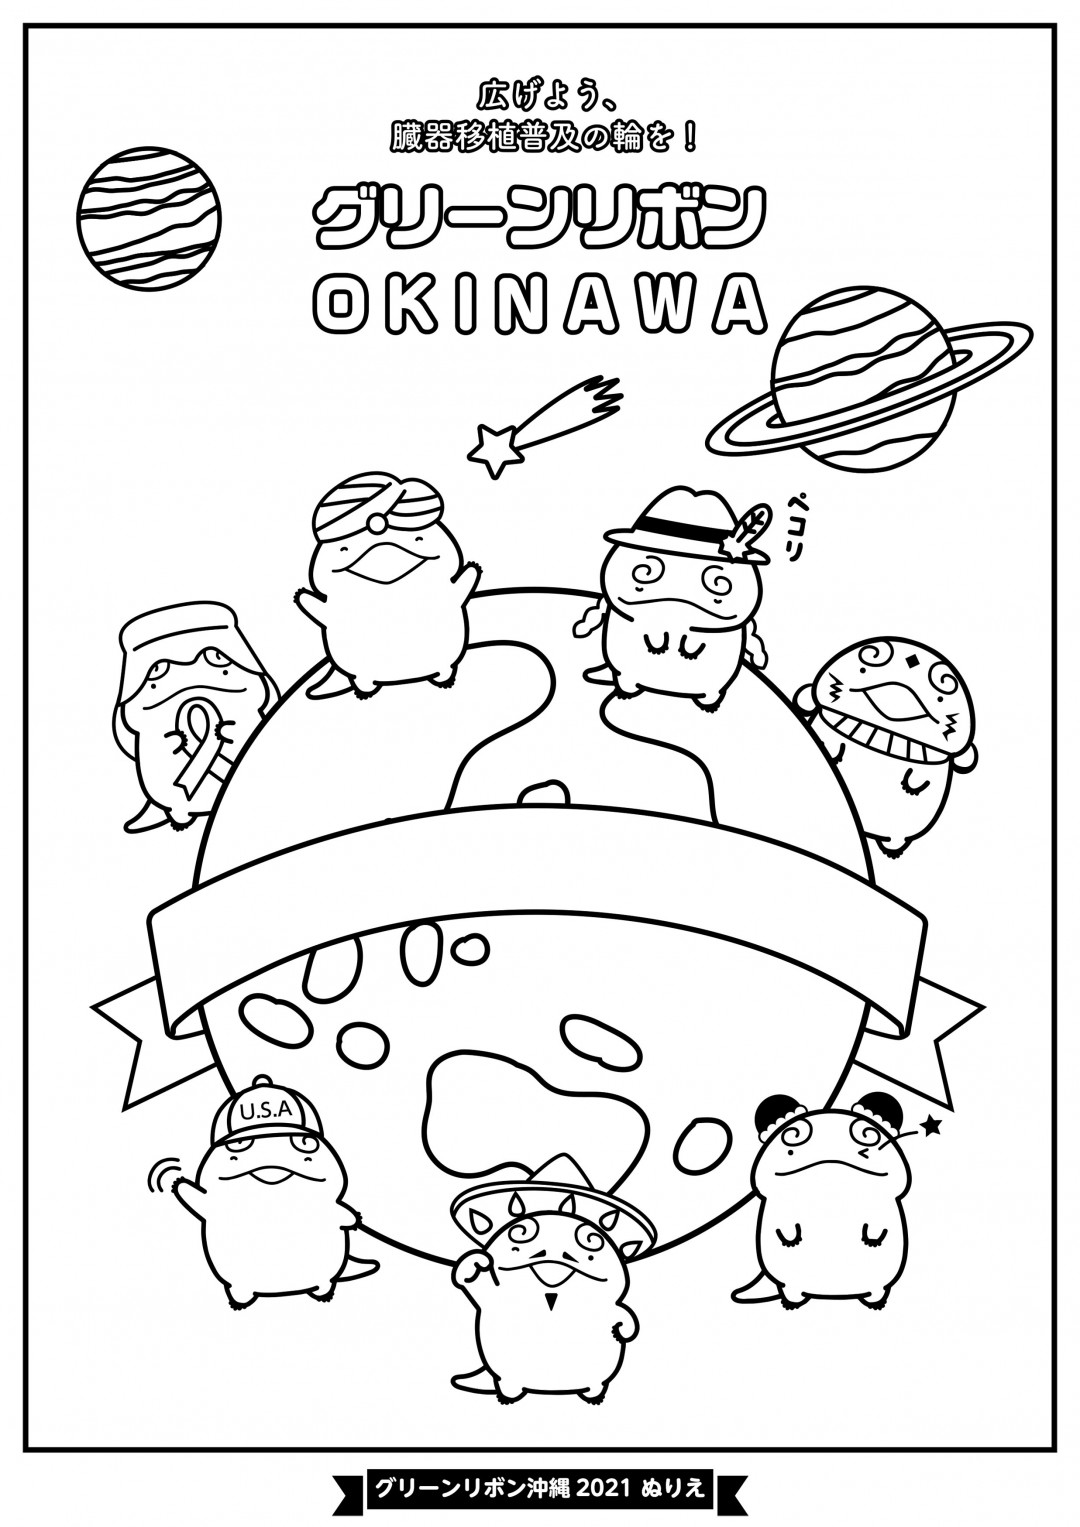 沖縄グリーンリボンぬりえ21キャンペーン イラスト 漫画 お絵描き ぬり絵 図画工作 公募 コンテスト情報なら公募ガイドonline